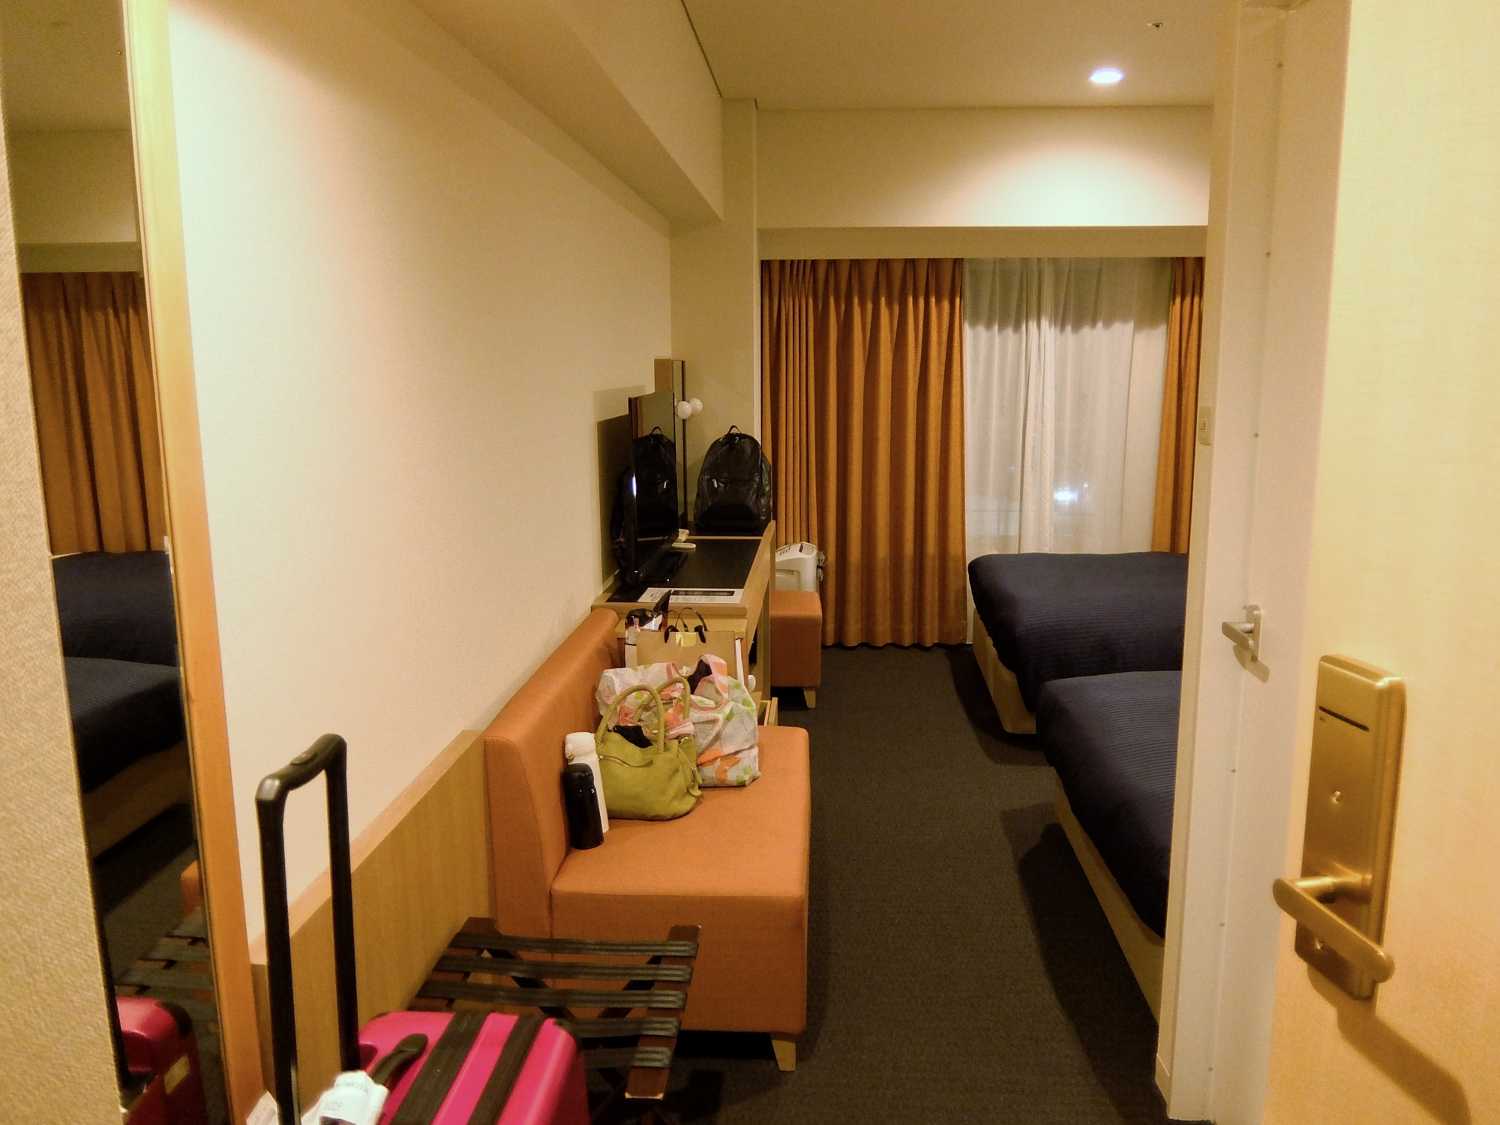 関西エアポートワシントンホテル りんくうプレミアム・アウトレット ＭＩＳＣＨ・ＭＡＳＣＨ 関空 大阪